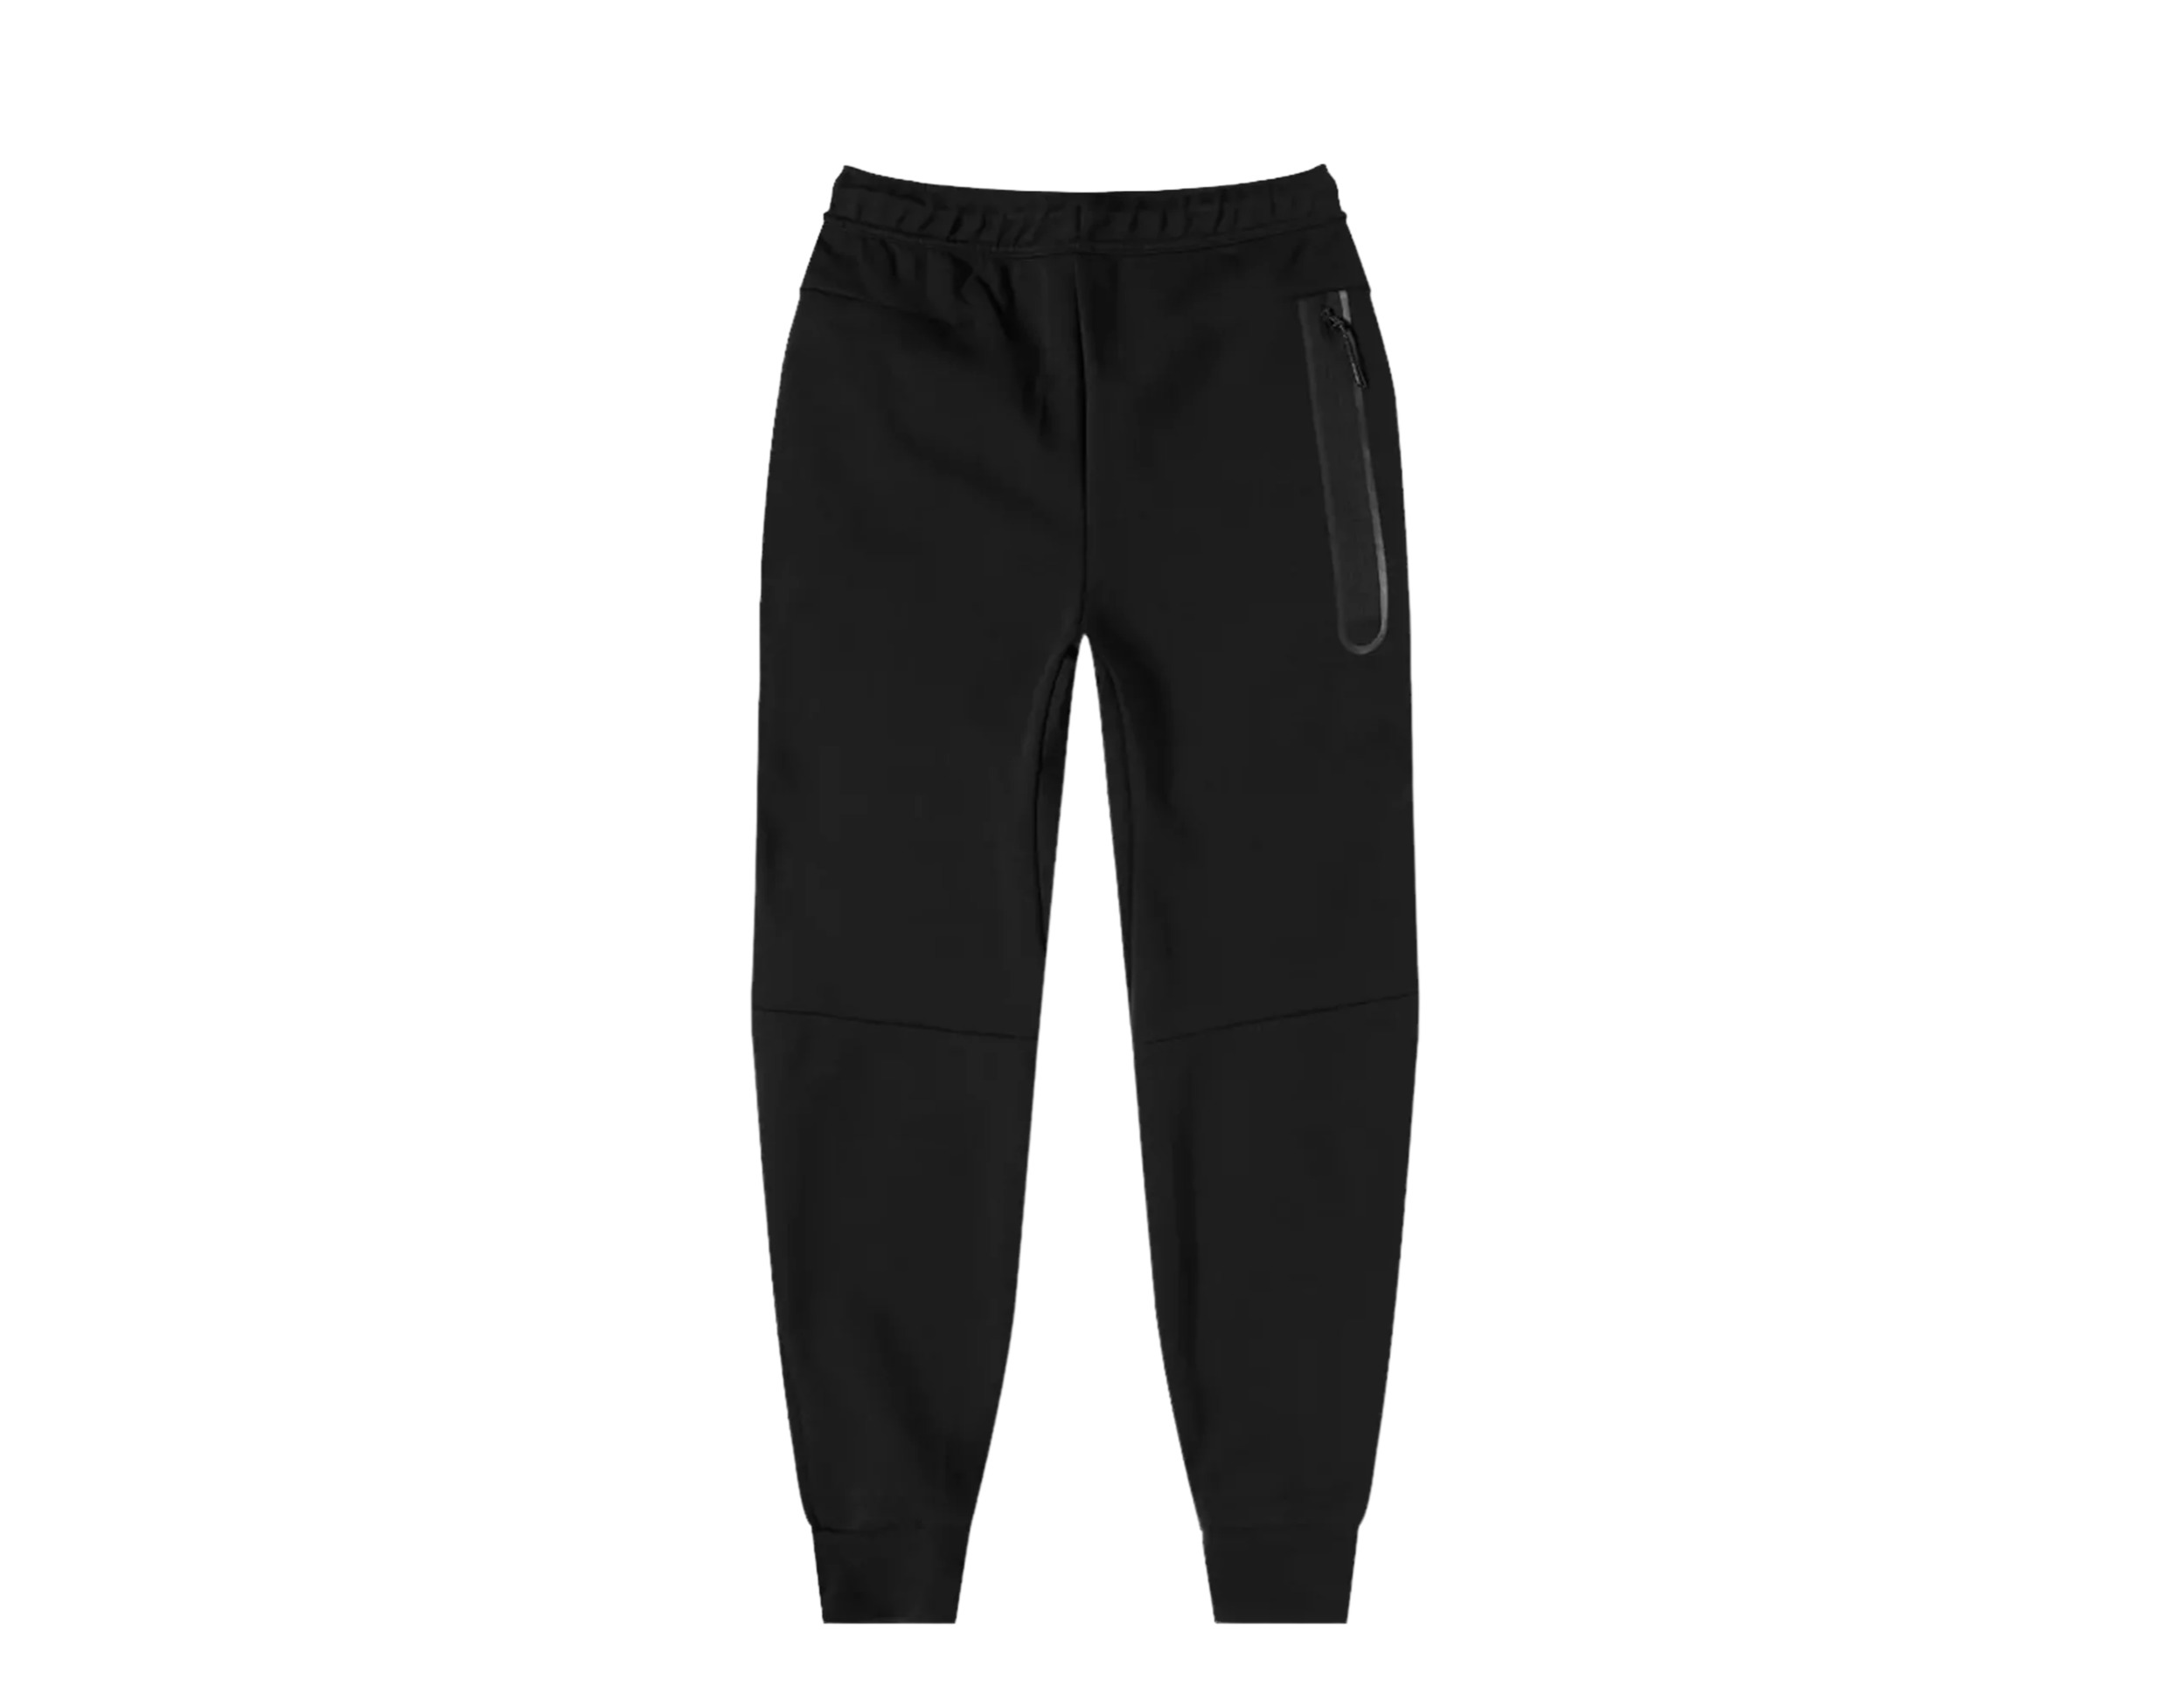 Nike Sportswear Tech Fleece Men's Joggers Pants Size L - image 2 of 2